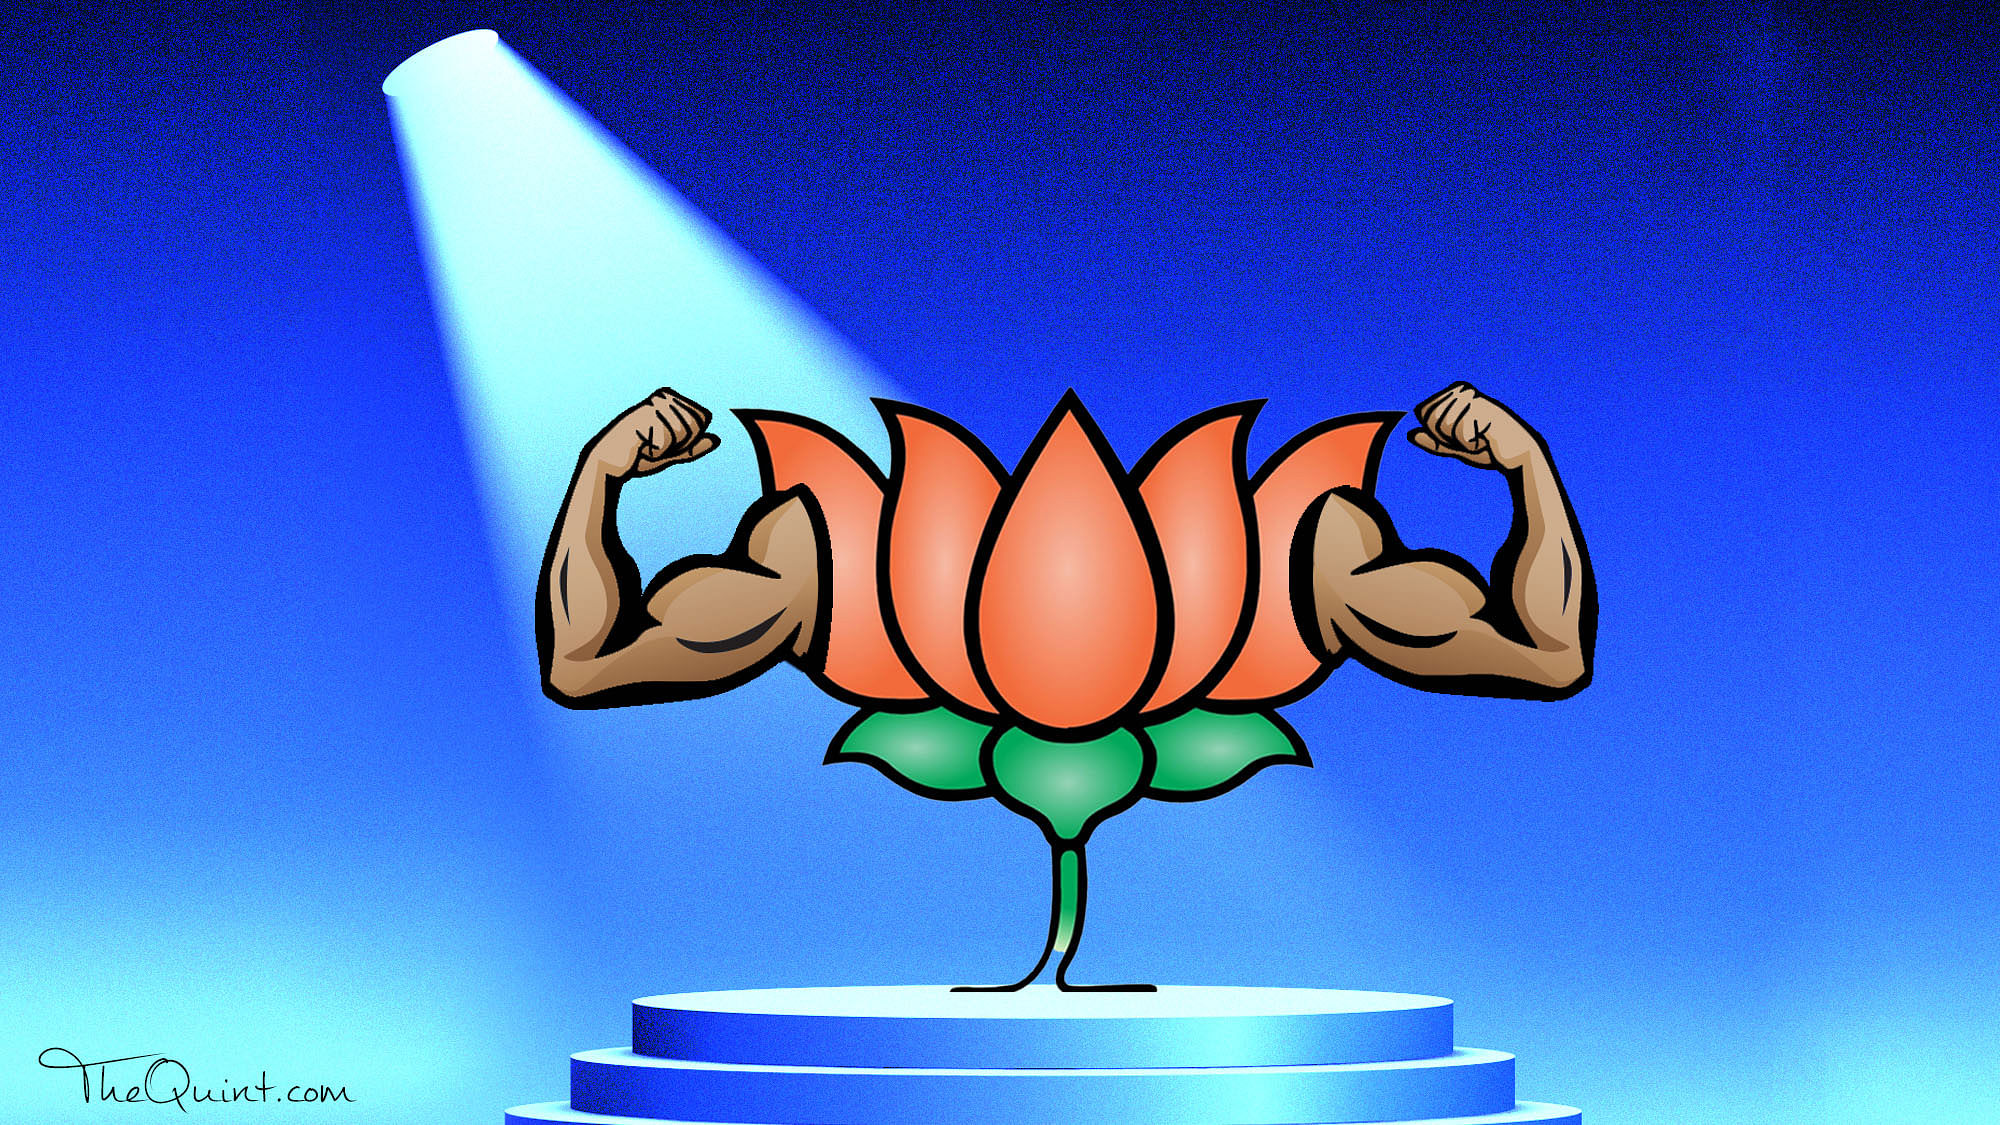 The BJP now has 58 members in the Rajya Sabha.